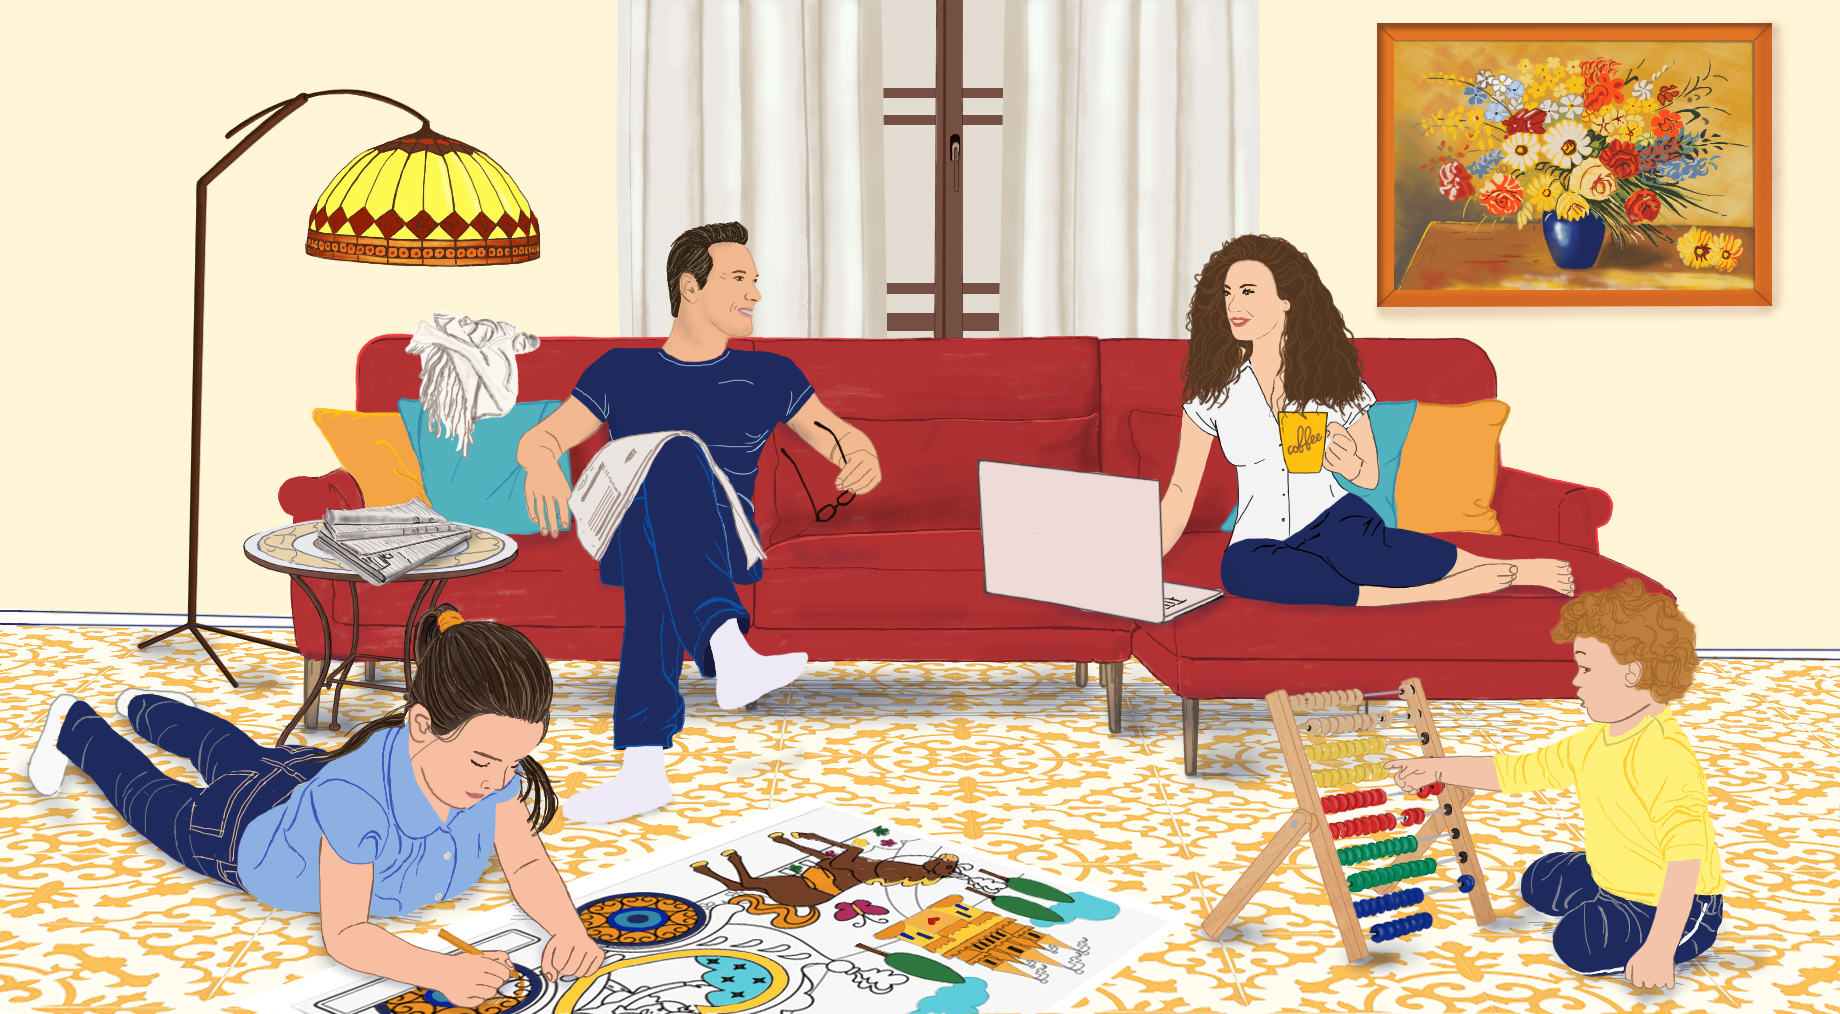 משפחה בסלון – רצפה כתומה